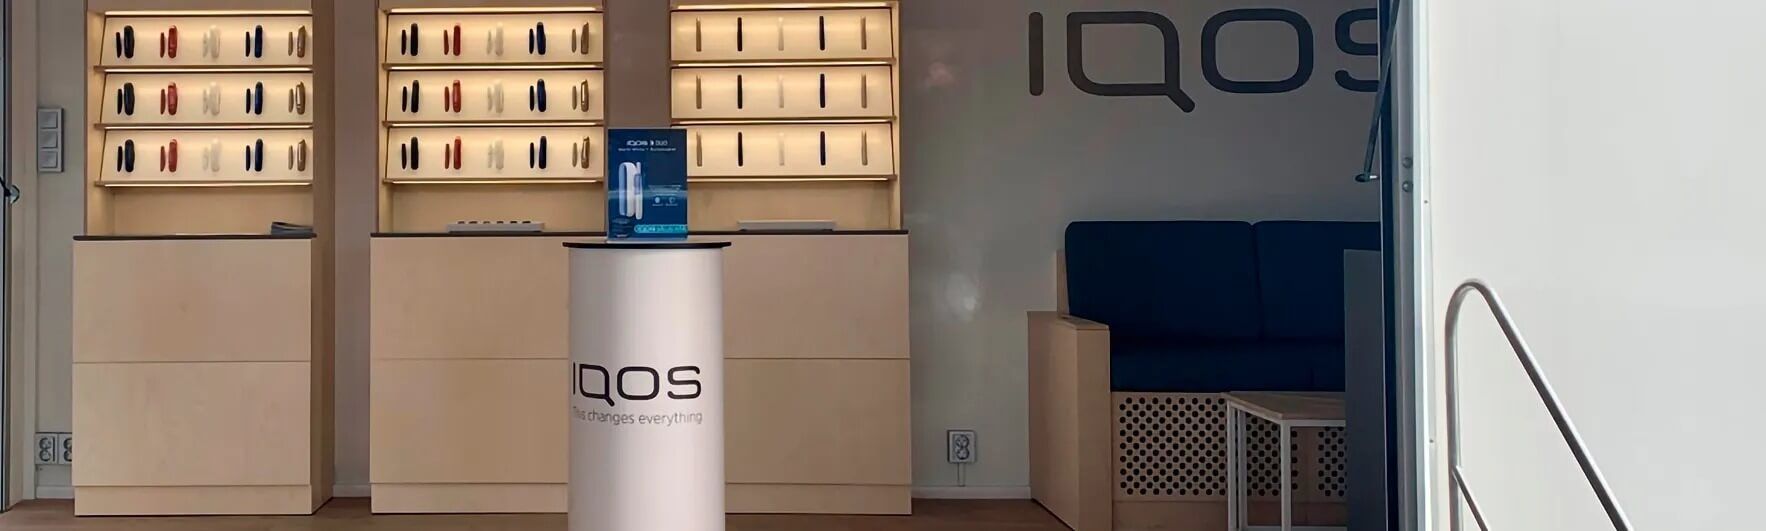 IQOS mobila butiker - vad är det?